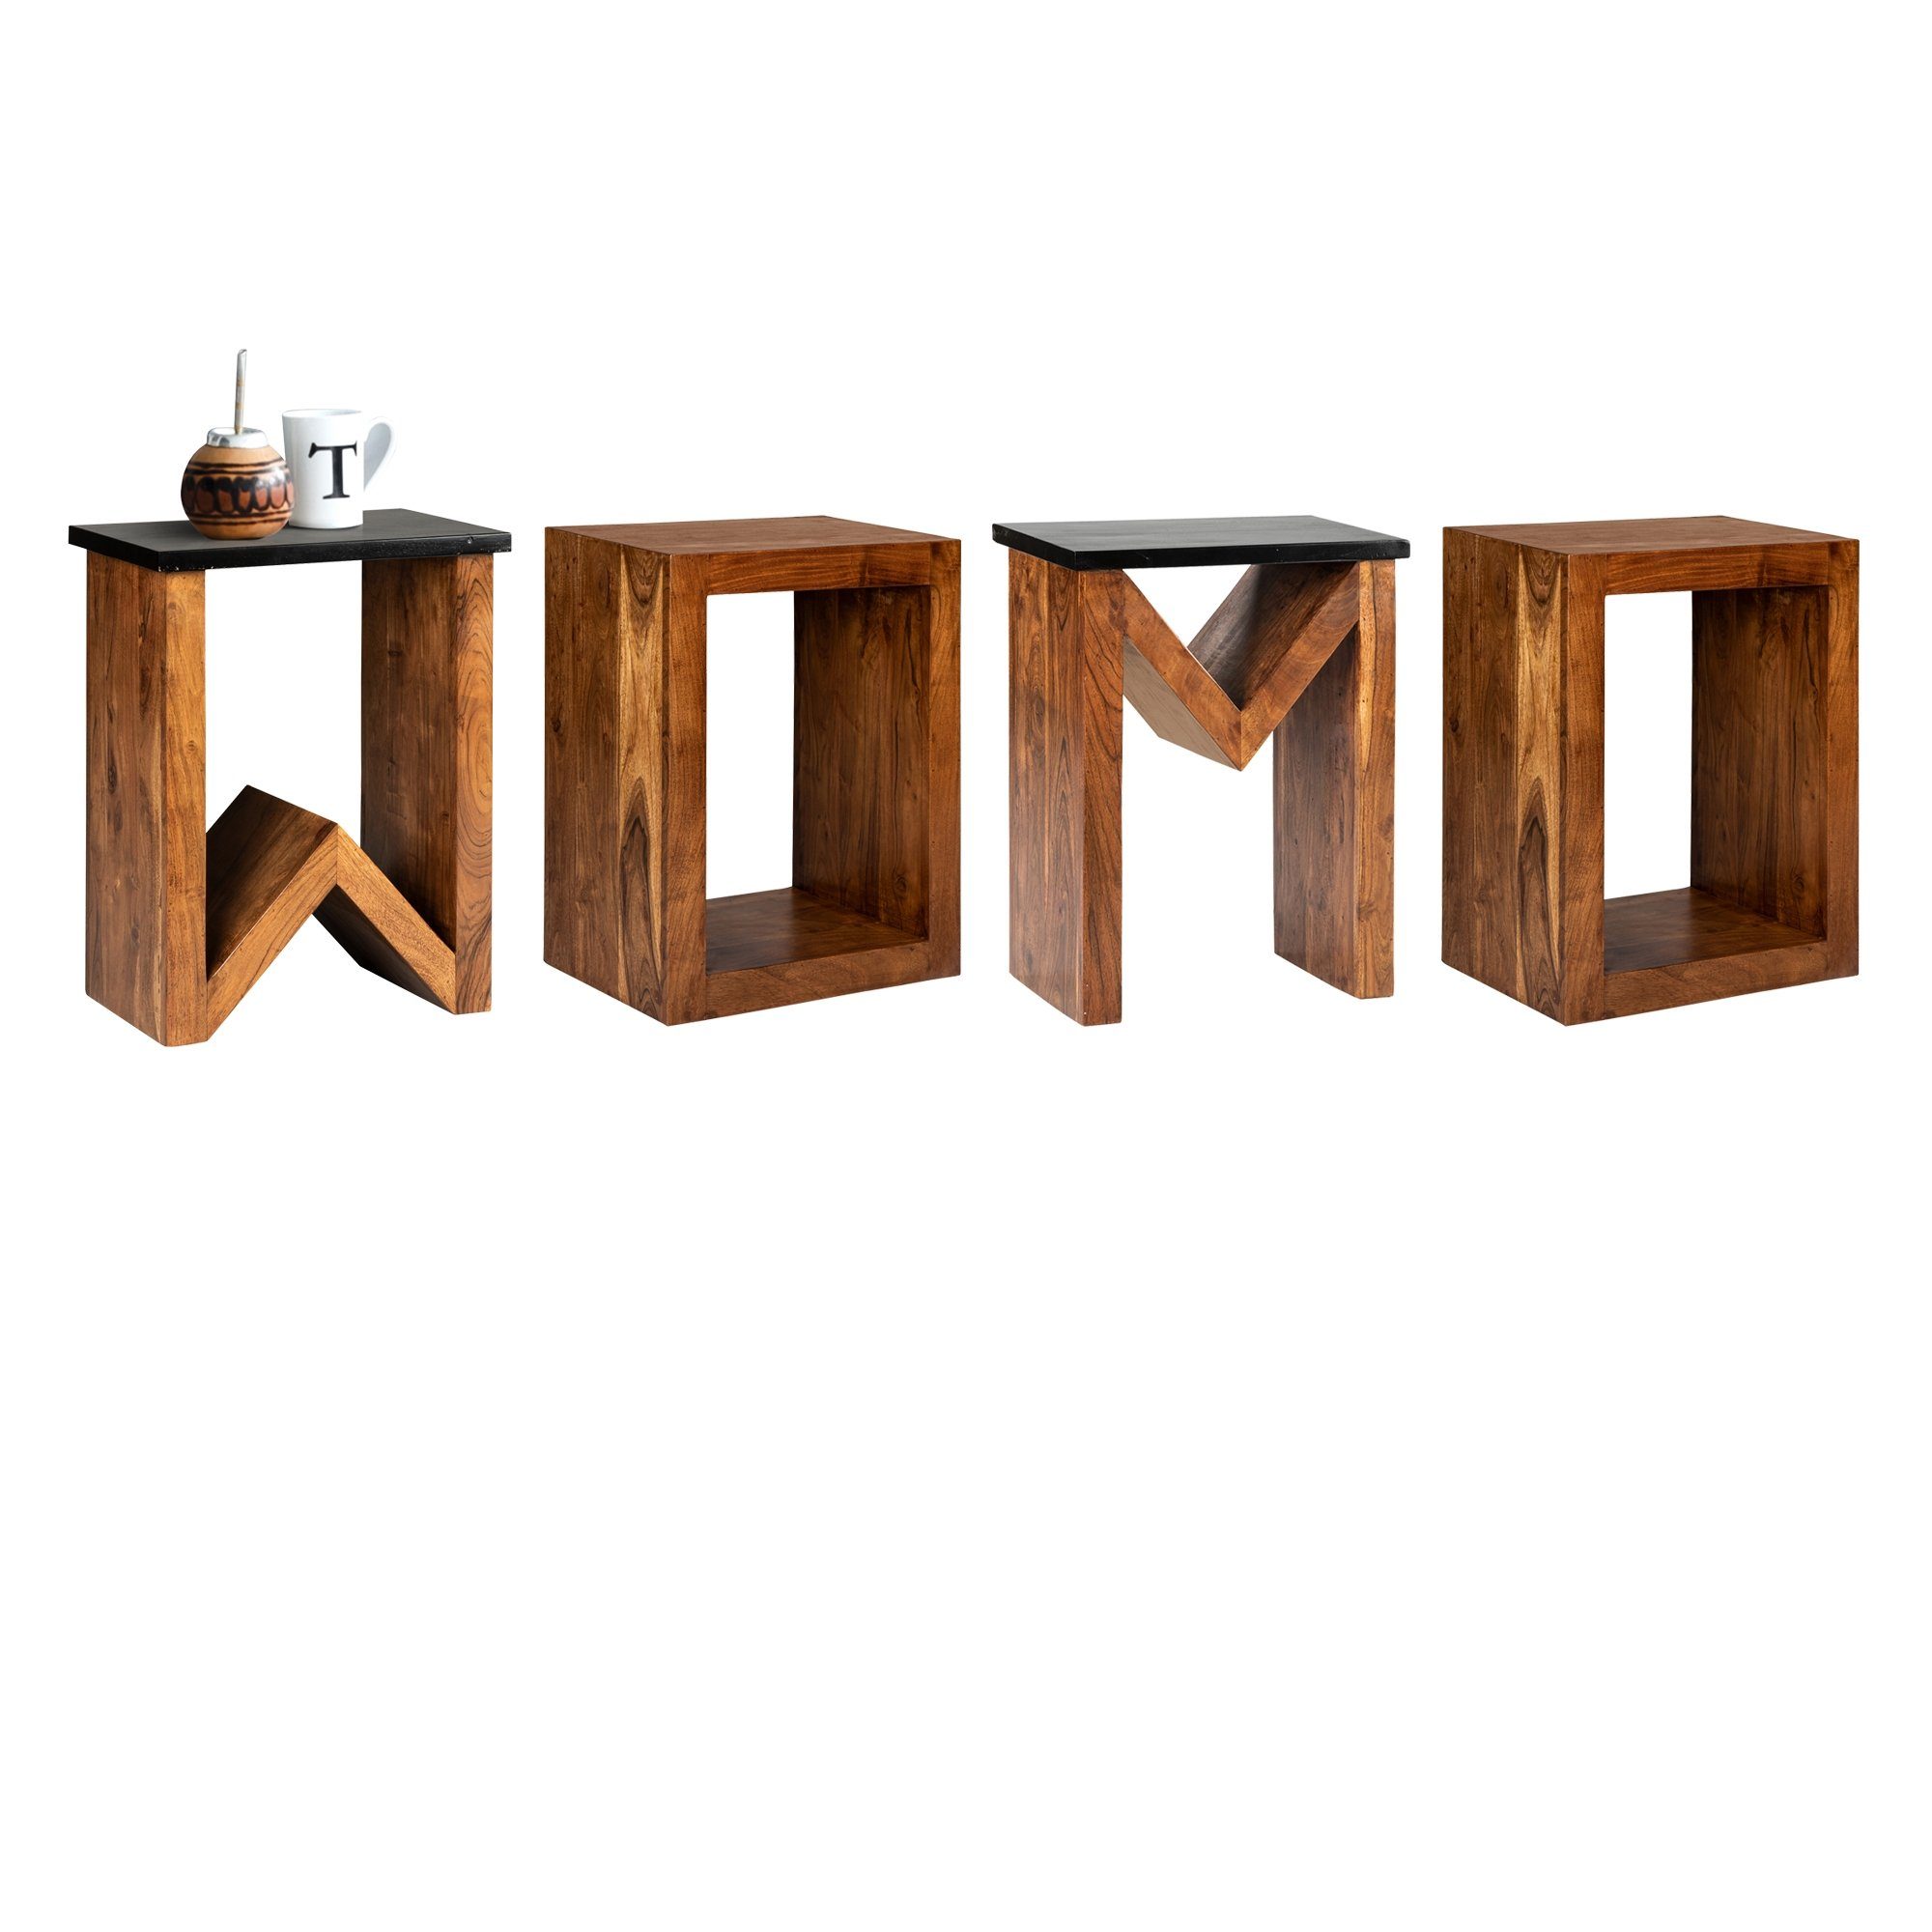 D-Form WOMO-DESIGN Unikat Sofatisch Loungetisch 60cm Kaffeetisch Wohnzimmertisch handgefertigt Holztisch, Braun Akazienholz Massivholz Beistelltisch